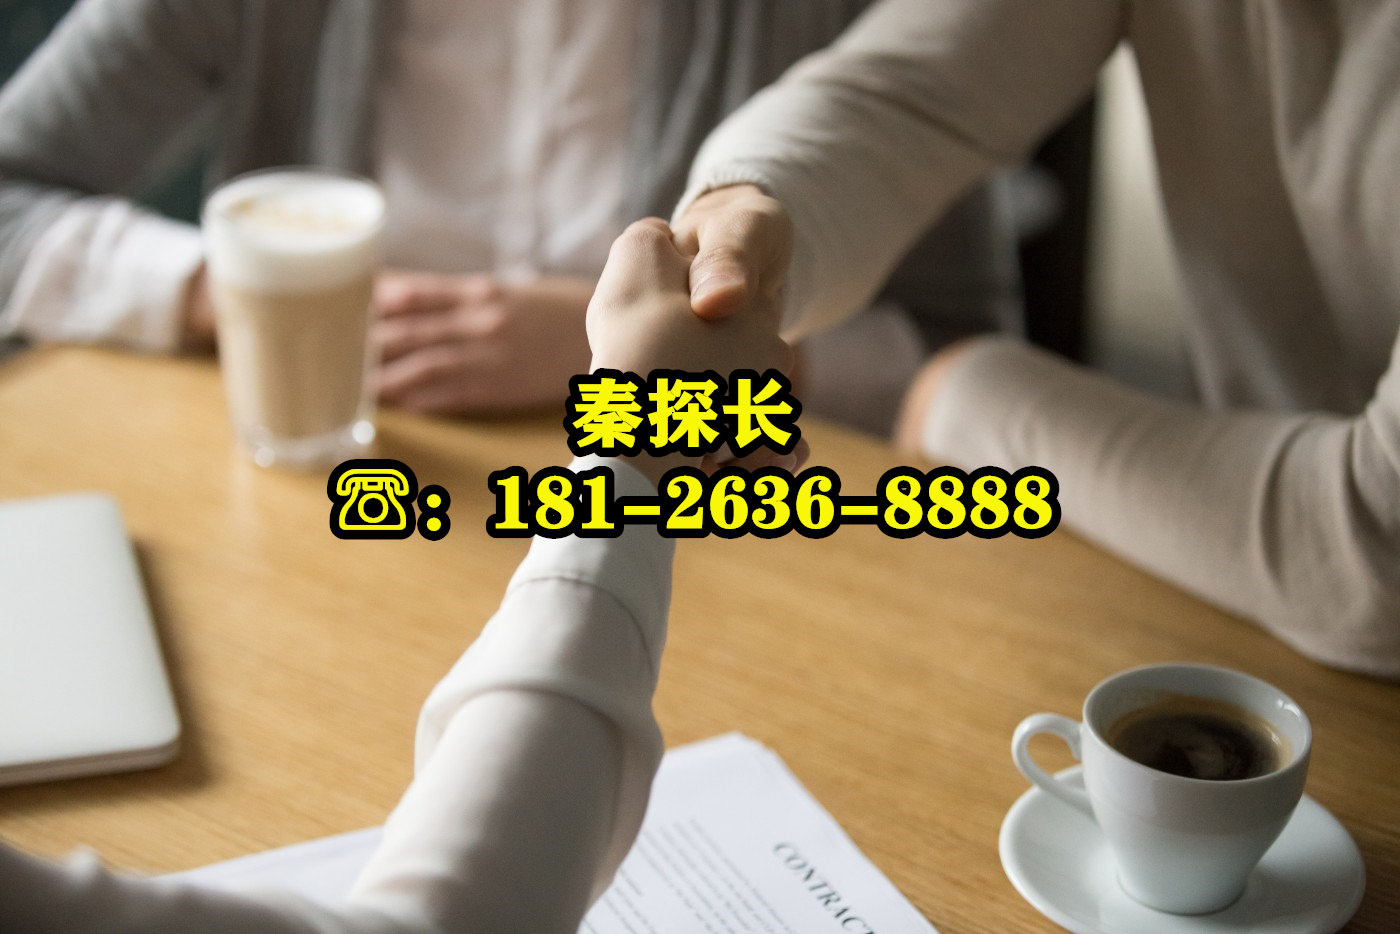 南京侦探联系电话：181-2636-8888